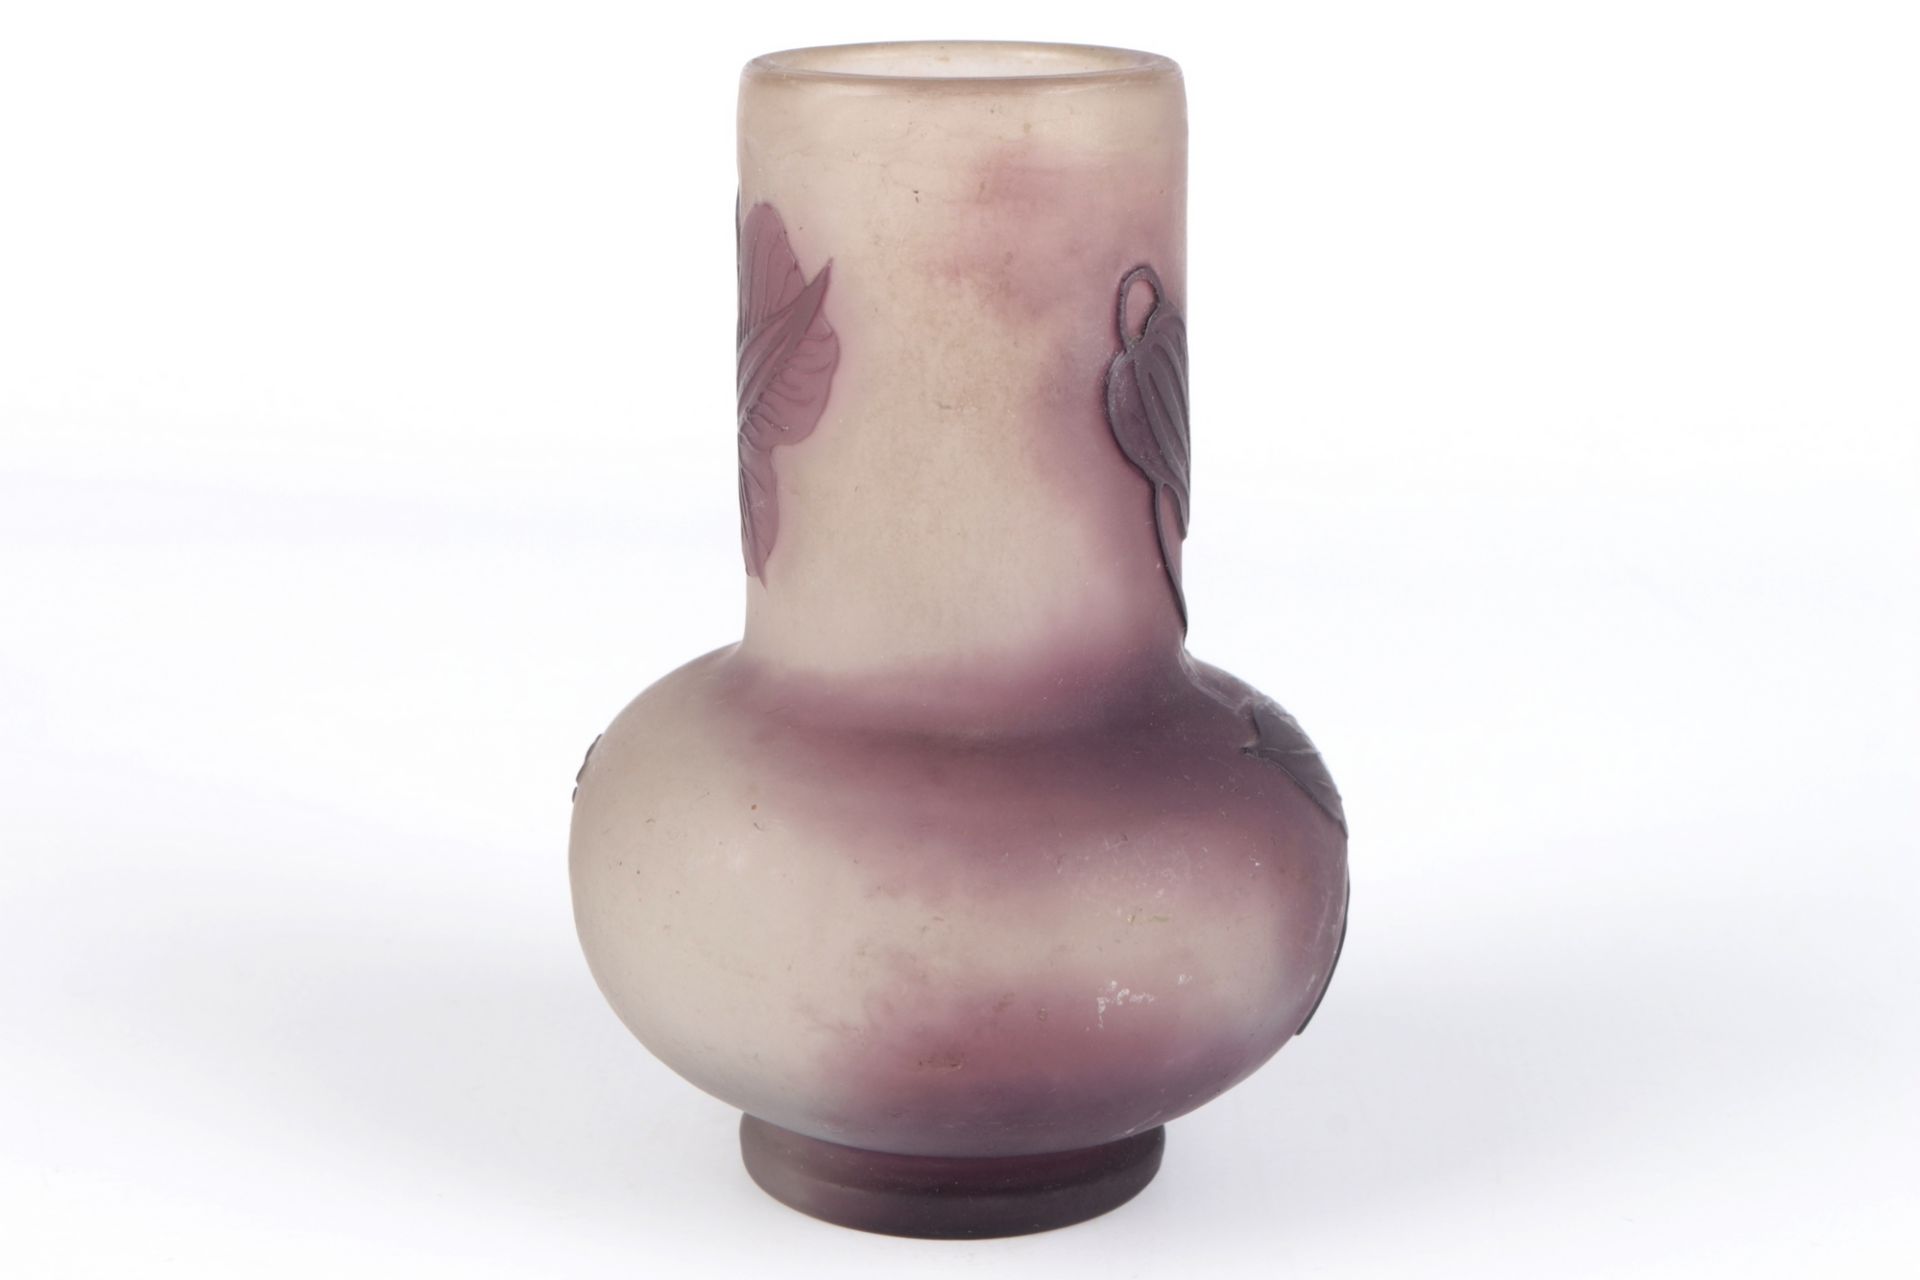 Emile Galle (1846-1904) Jugendstil Vase, french art nouveau glass vase, - Image 3 of 4